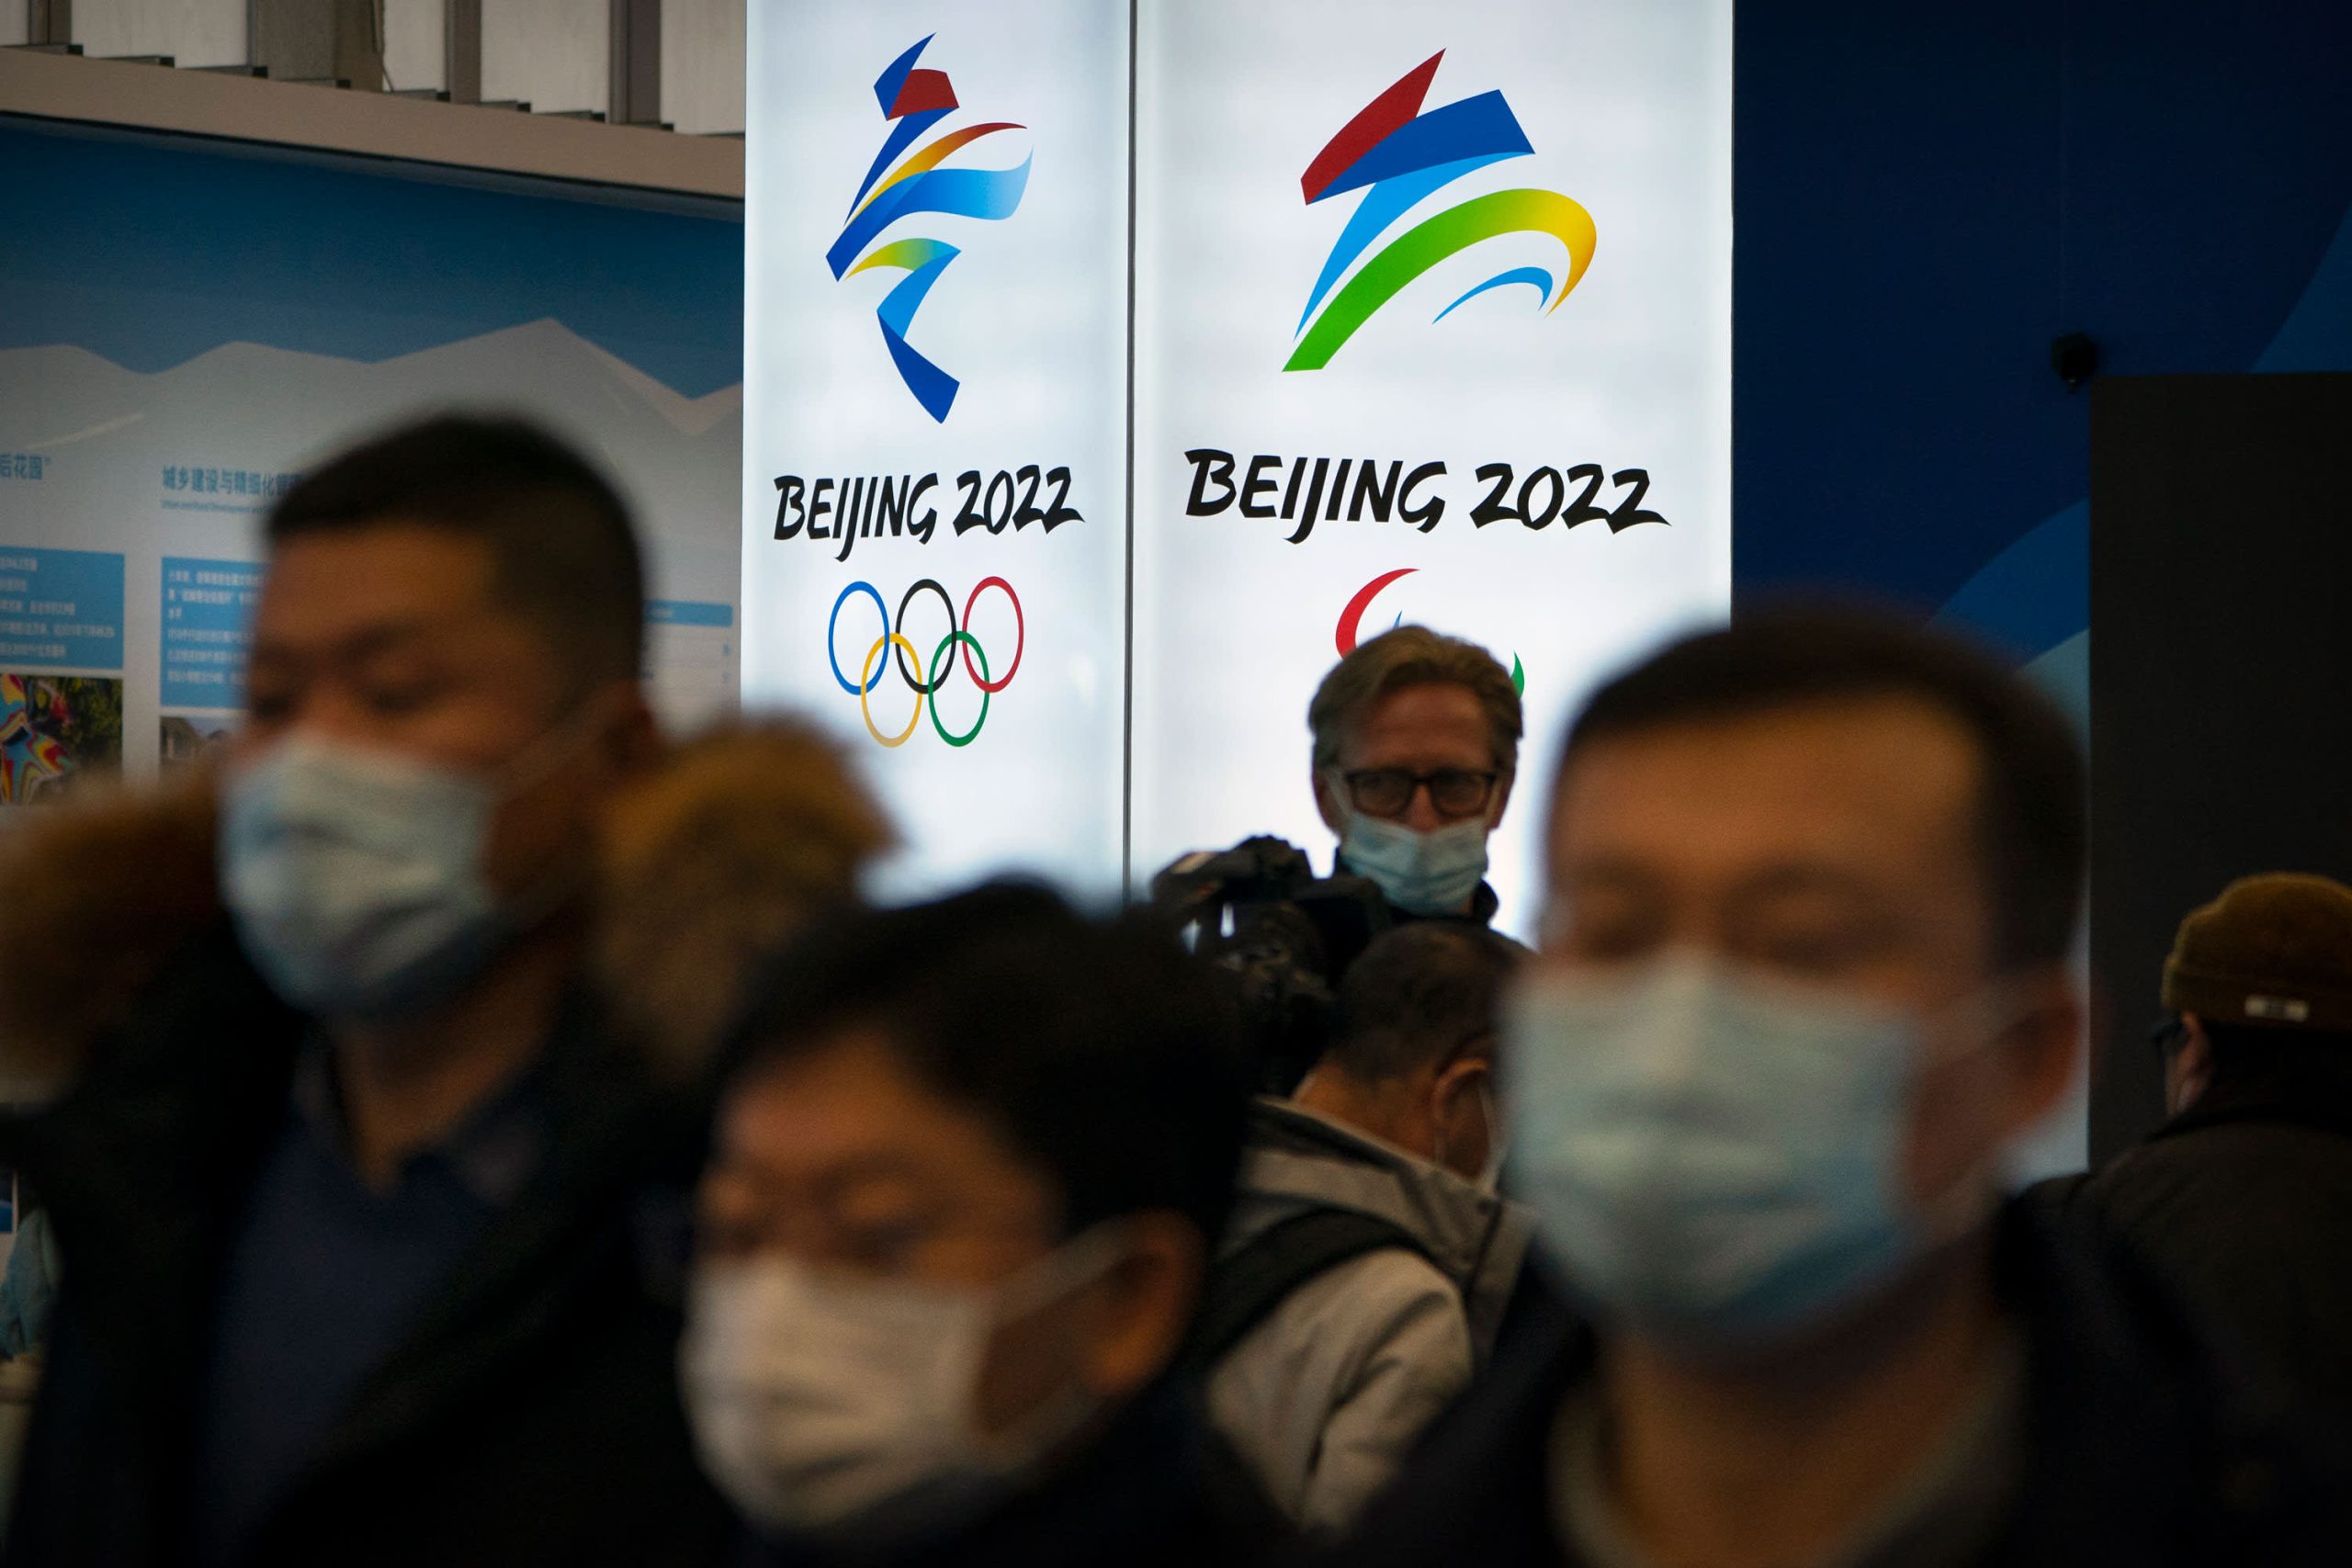 Se espera que Xi invite a Biden a los Juegos Olímpicos de Invierno de Beijing, dicen las fuentes